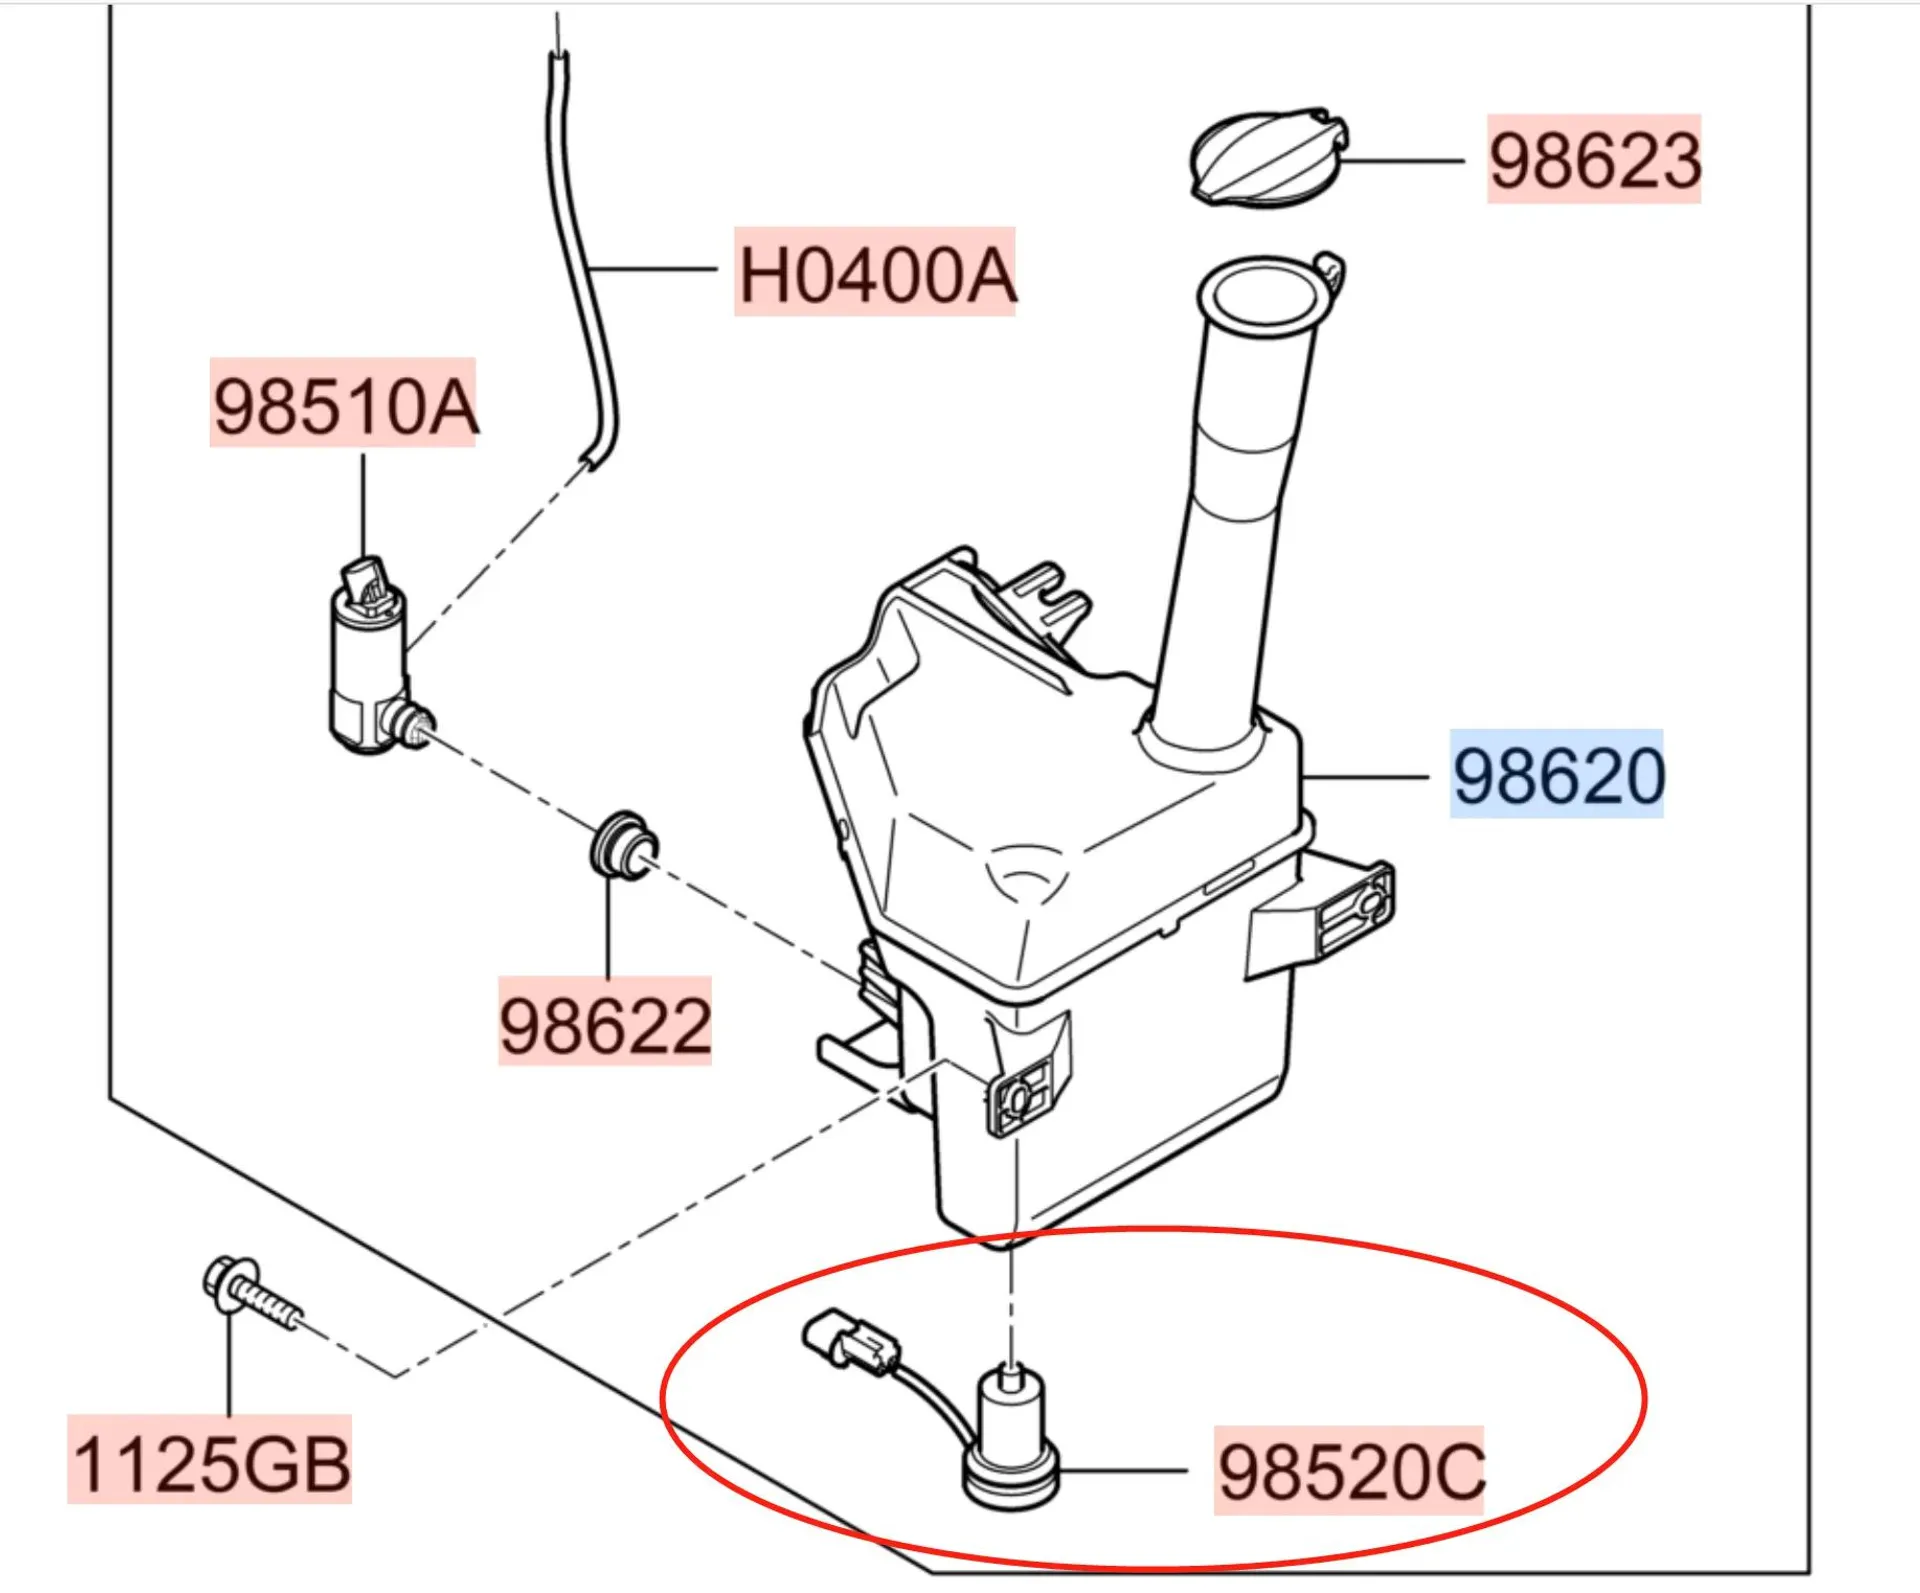 Washer Fluid Level Sensor, Level Sensor, Level Switch Windshield Washer 985202M500 for Hyundai Sonata Elantra GT Genesis Coupe